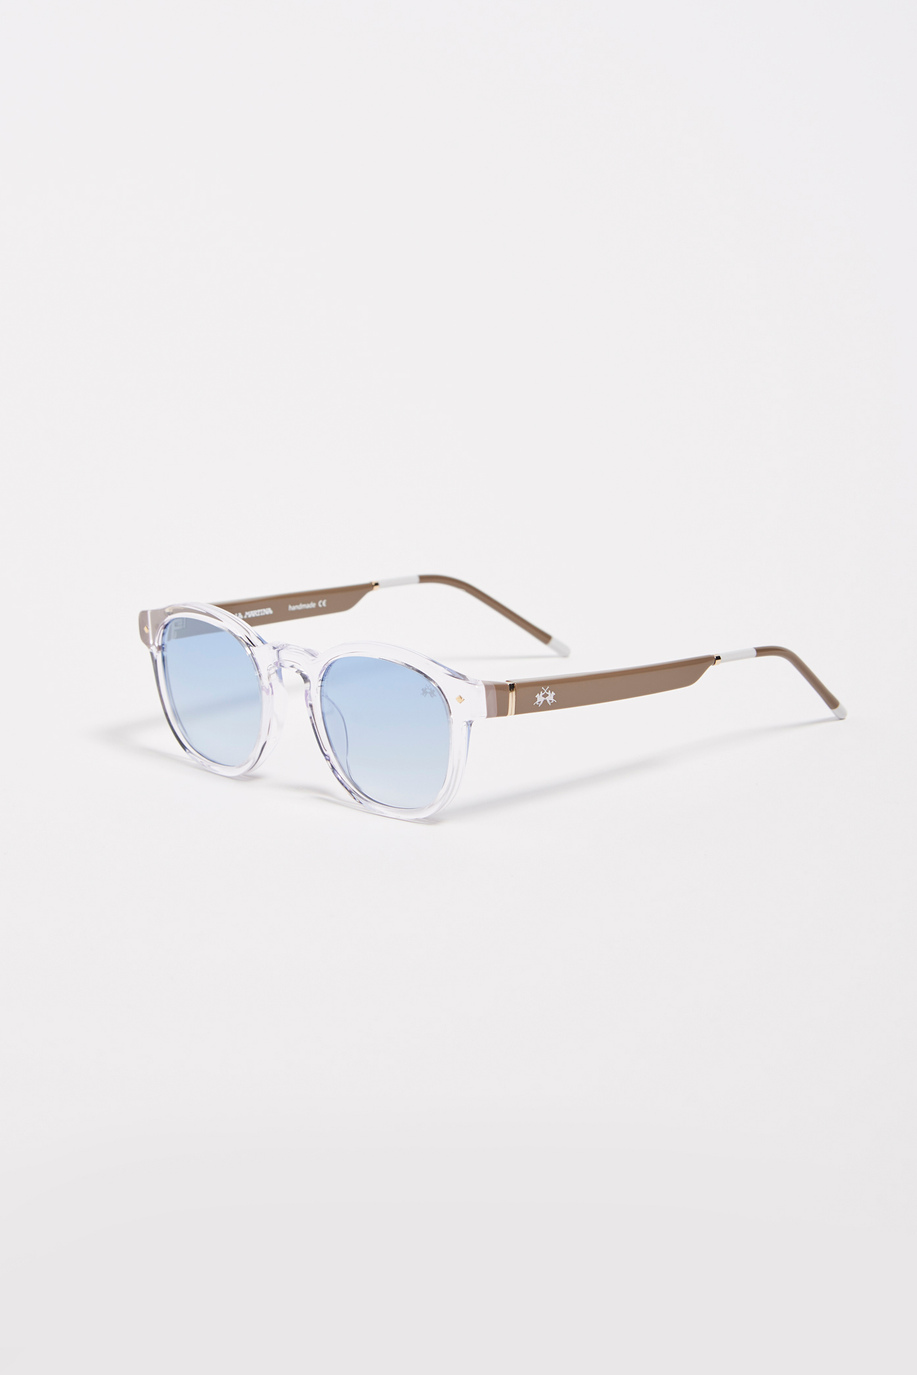 Drop model men's sunglasses - Accessories Man | La Martina - Official Online Shop